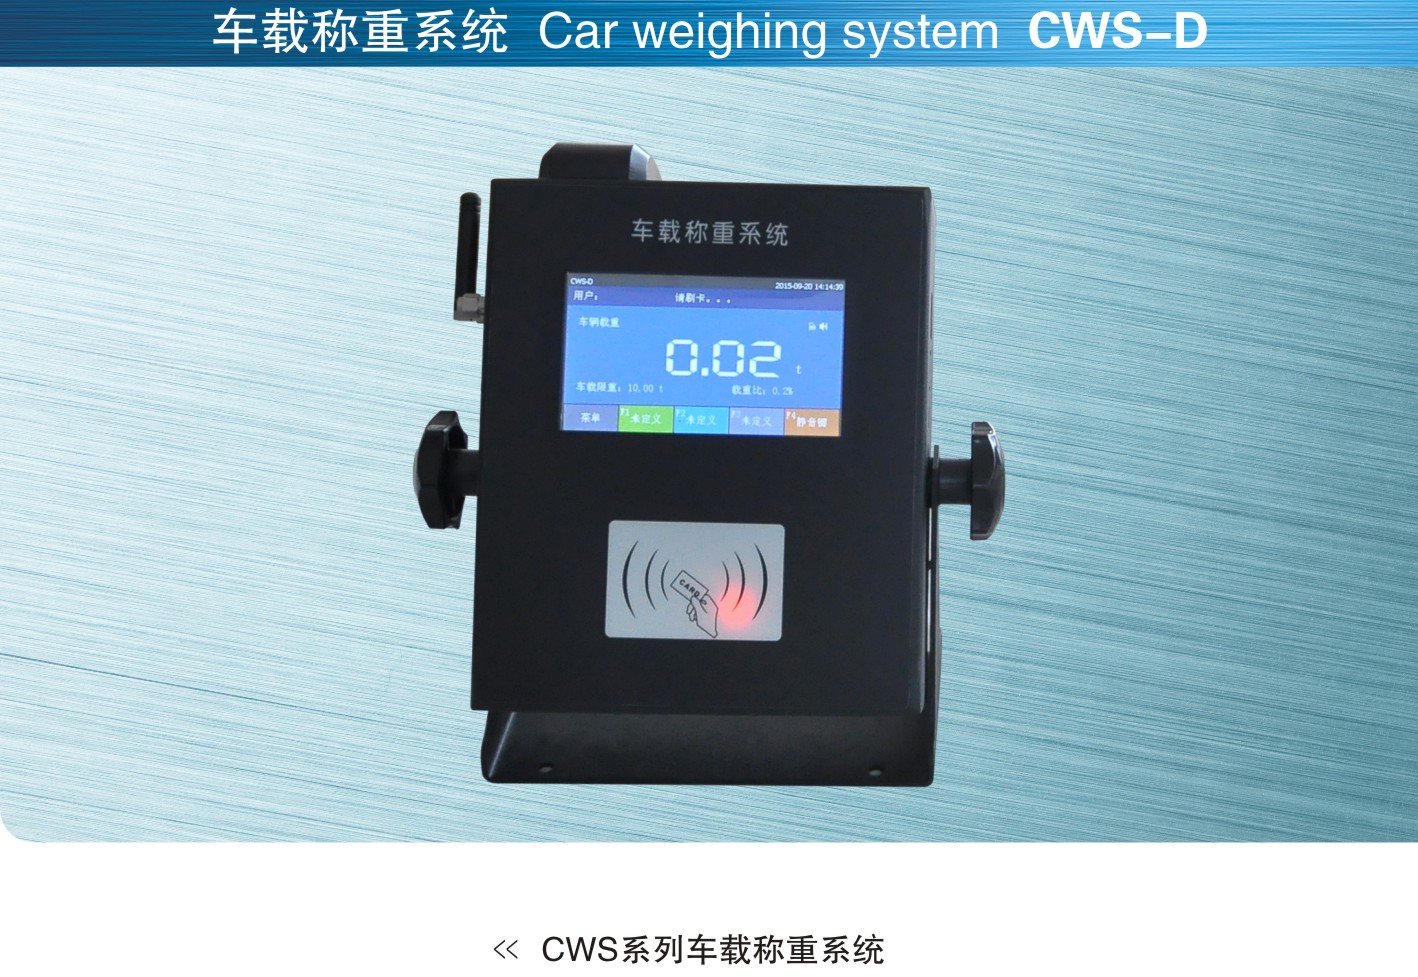 英国OAP CWS-D车载称重系统